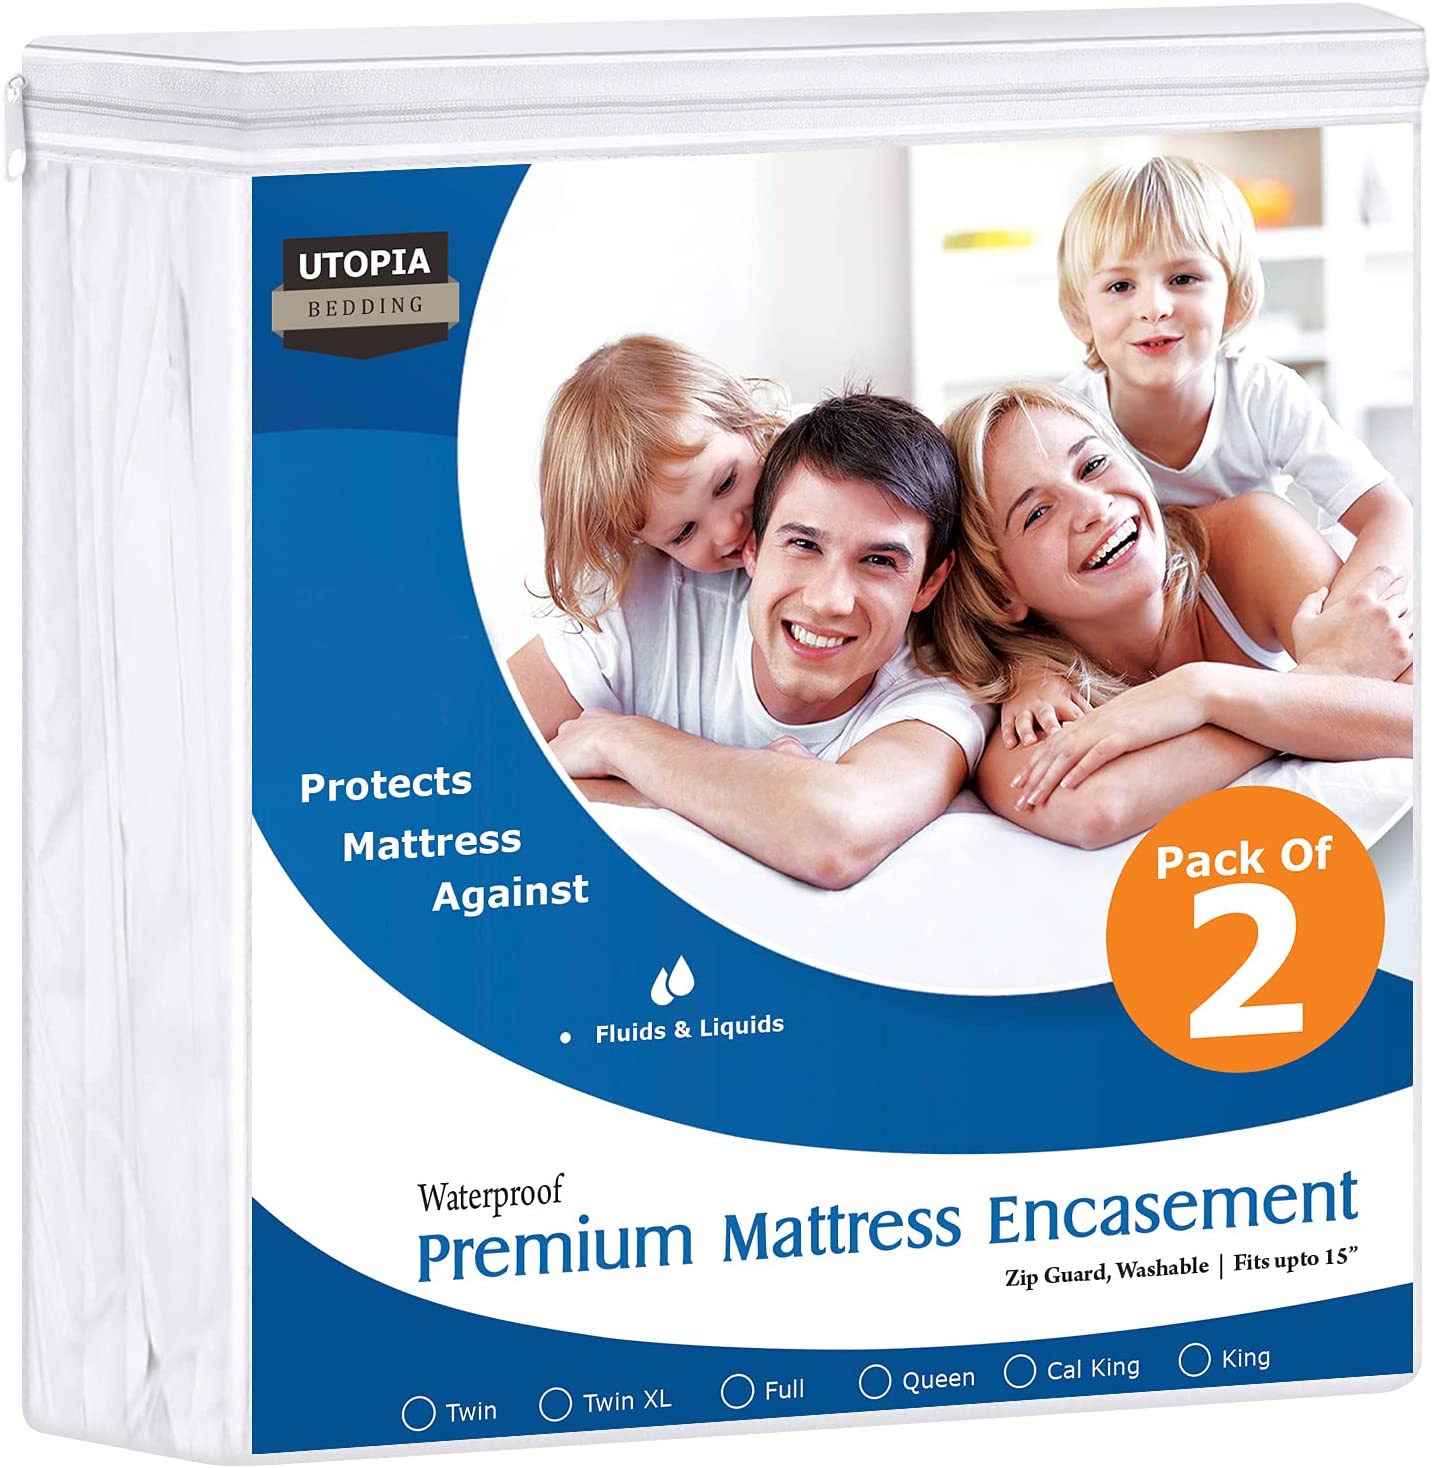 Buy Utopia Bedding Mattress Encasement From $11.86/Piece- B2B – Utopia Deals